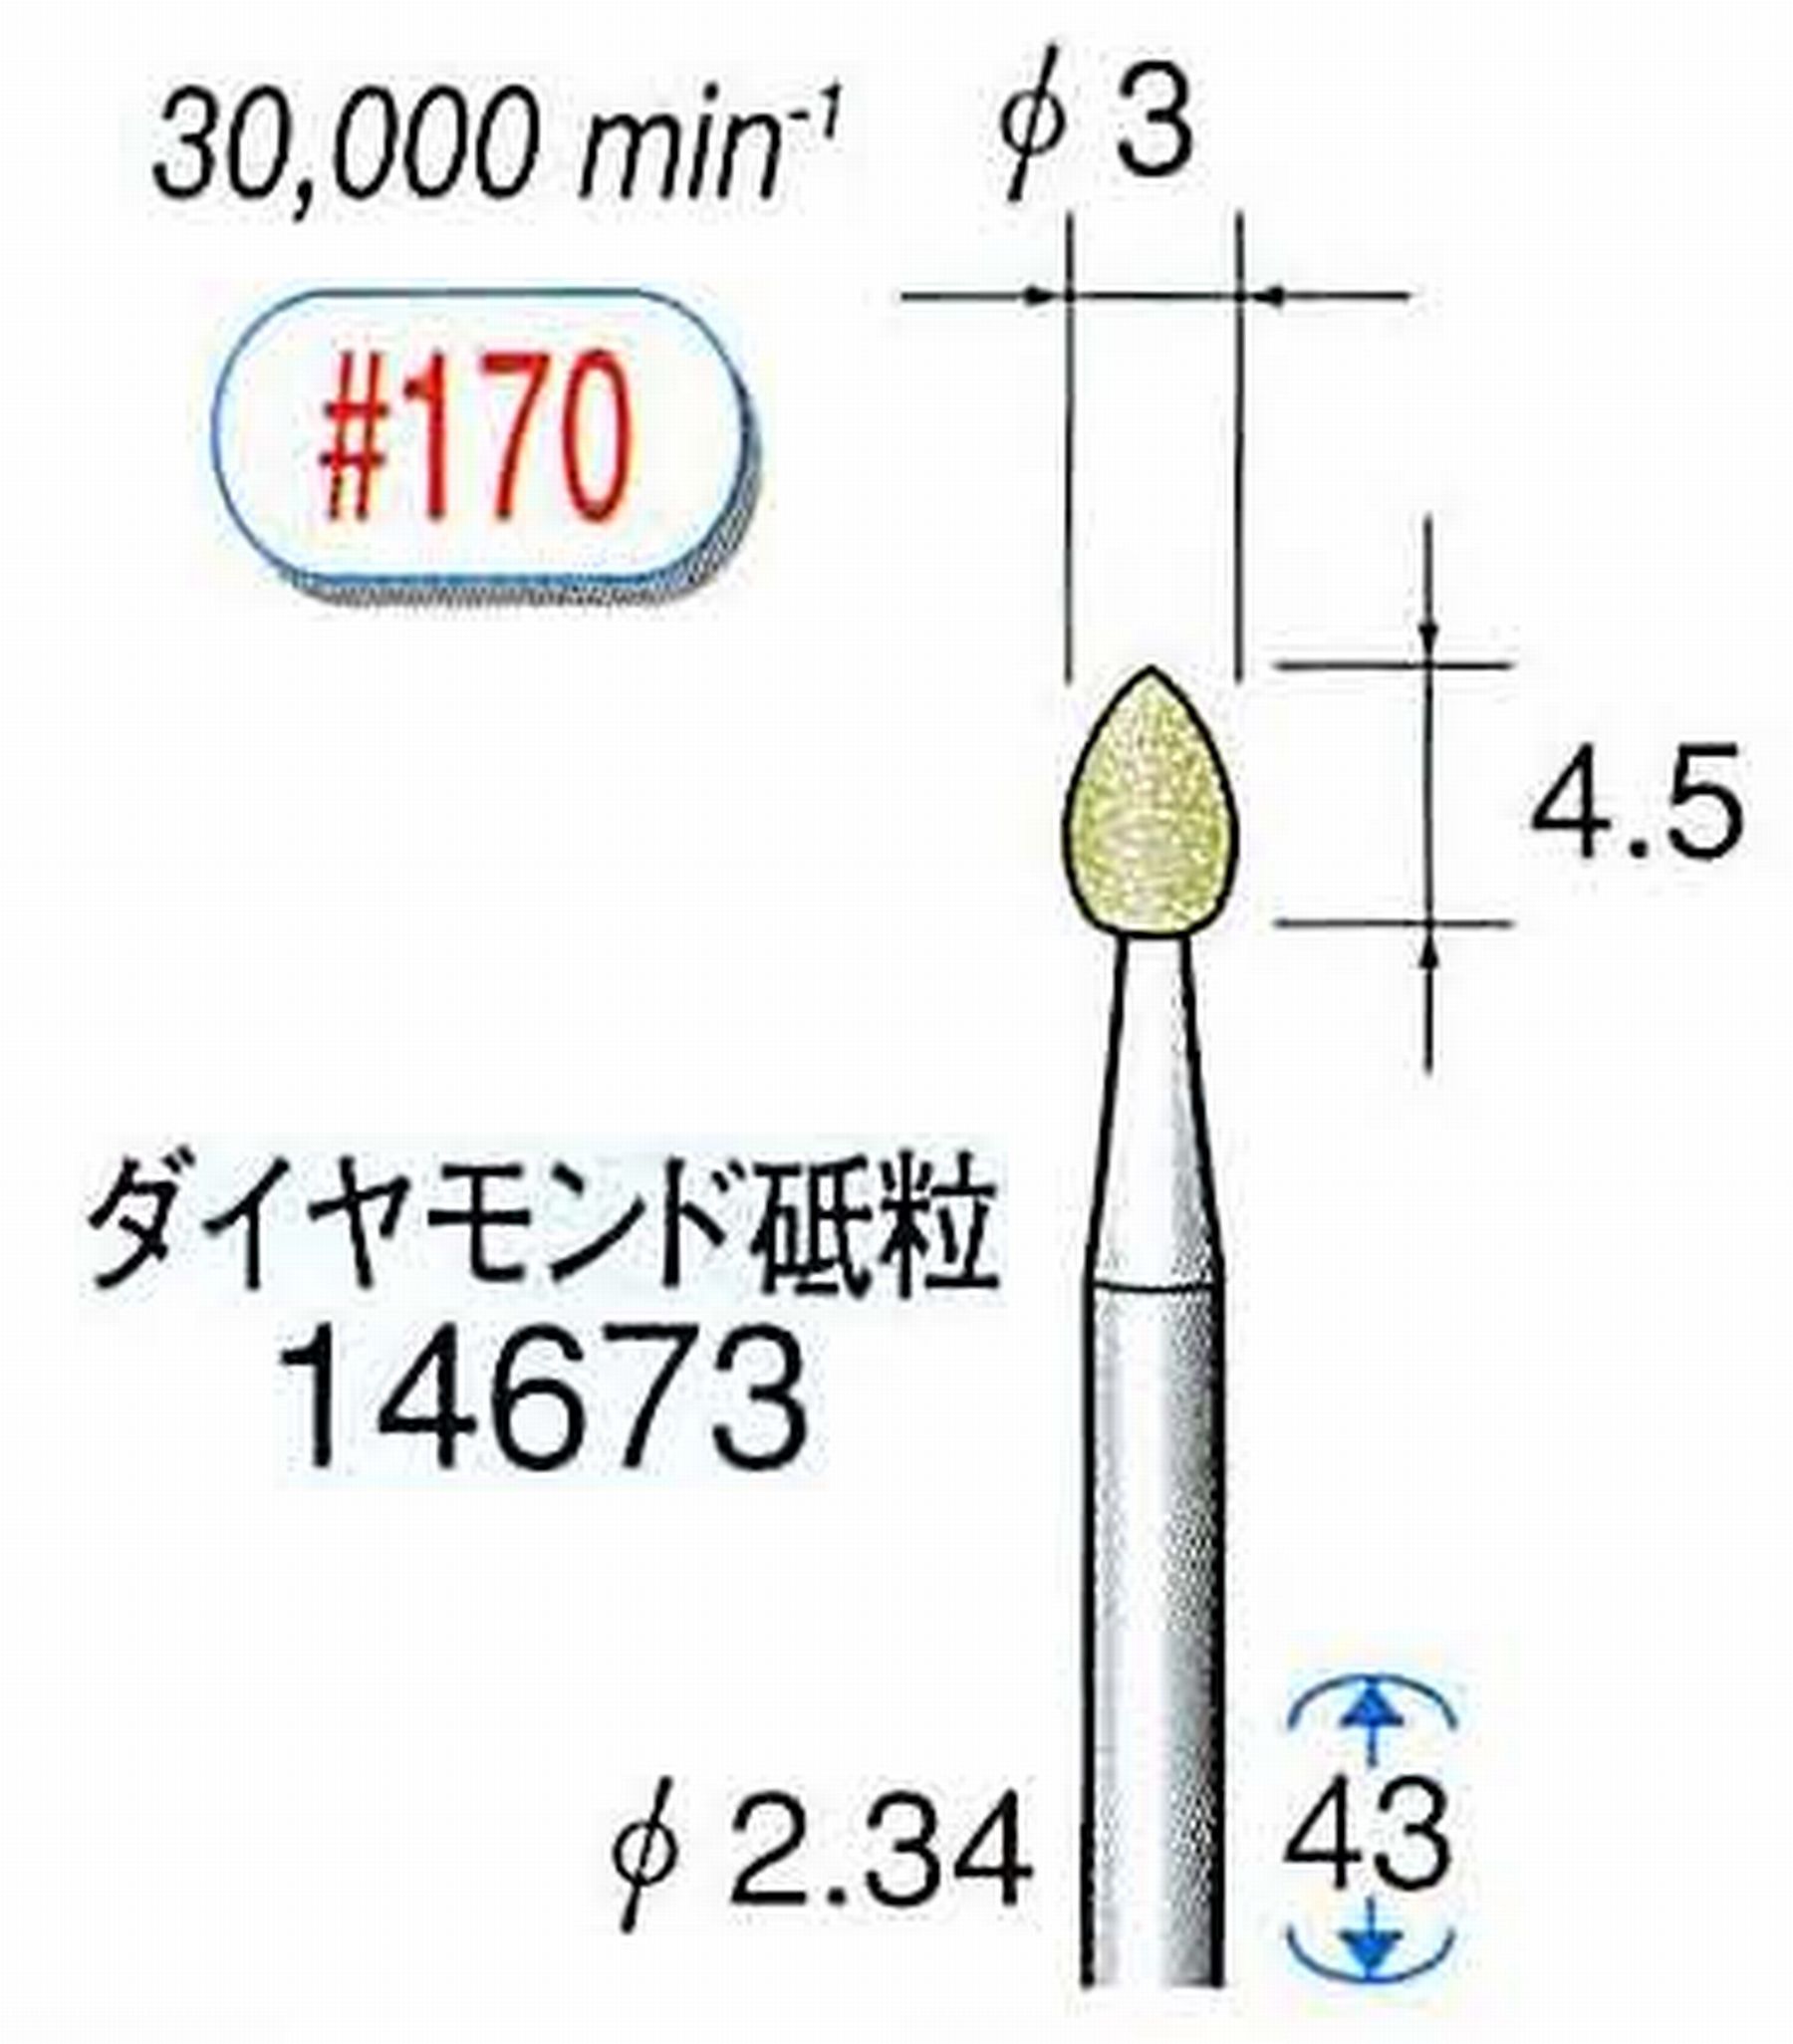 ナカニシ/NAKANISHI セラミックダイヤモンド砥石 ダイヤモンド砥粒 軸径(シャンク)φ2.34mm 14673